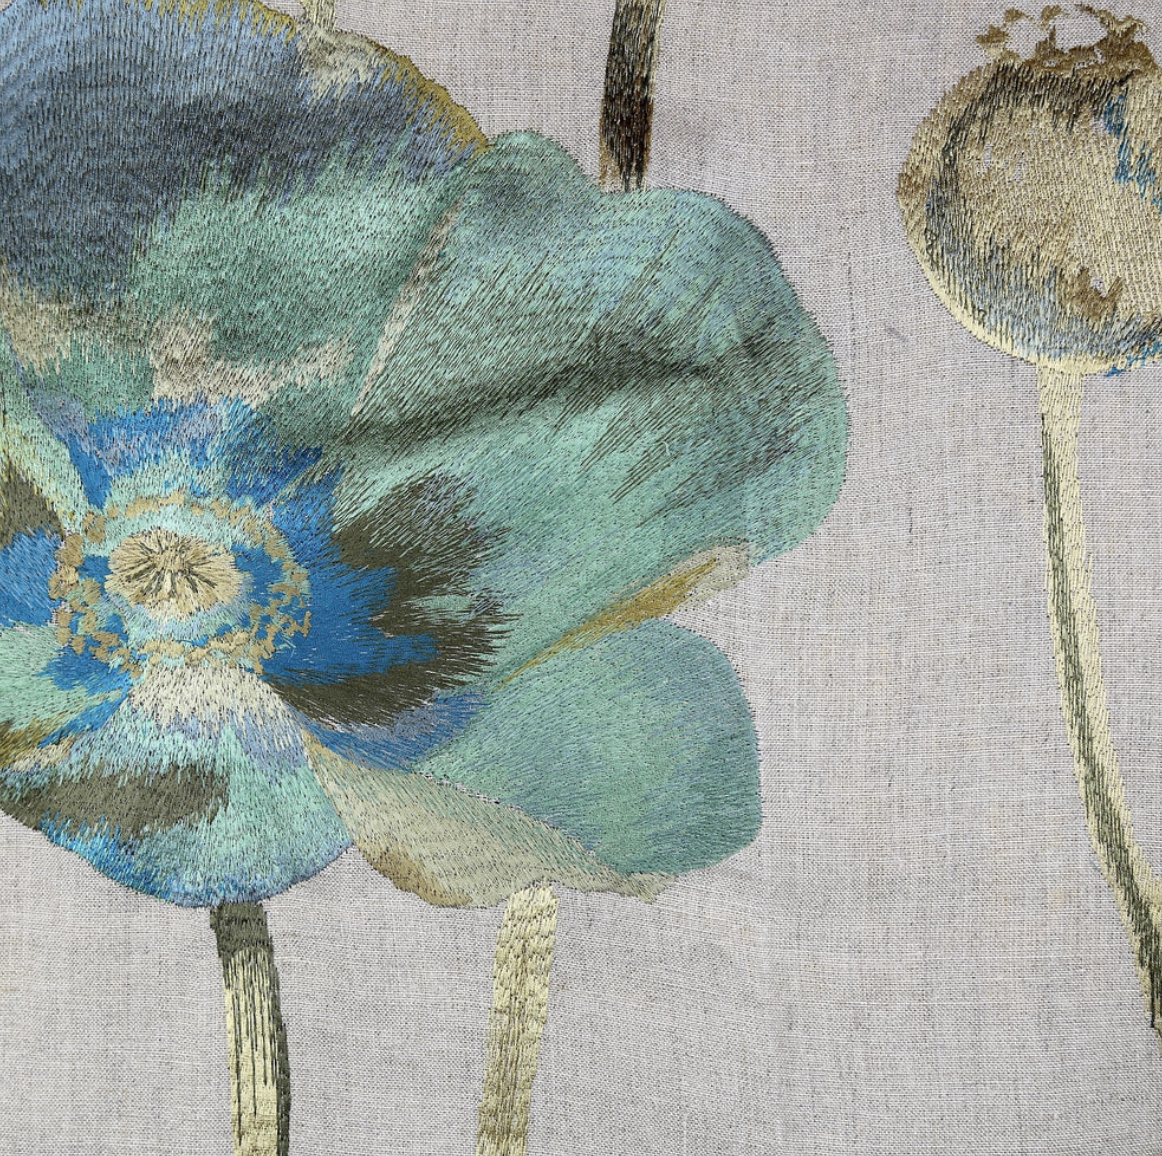 Opium duvet cove by Ann Gish